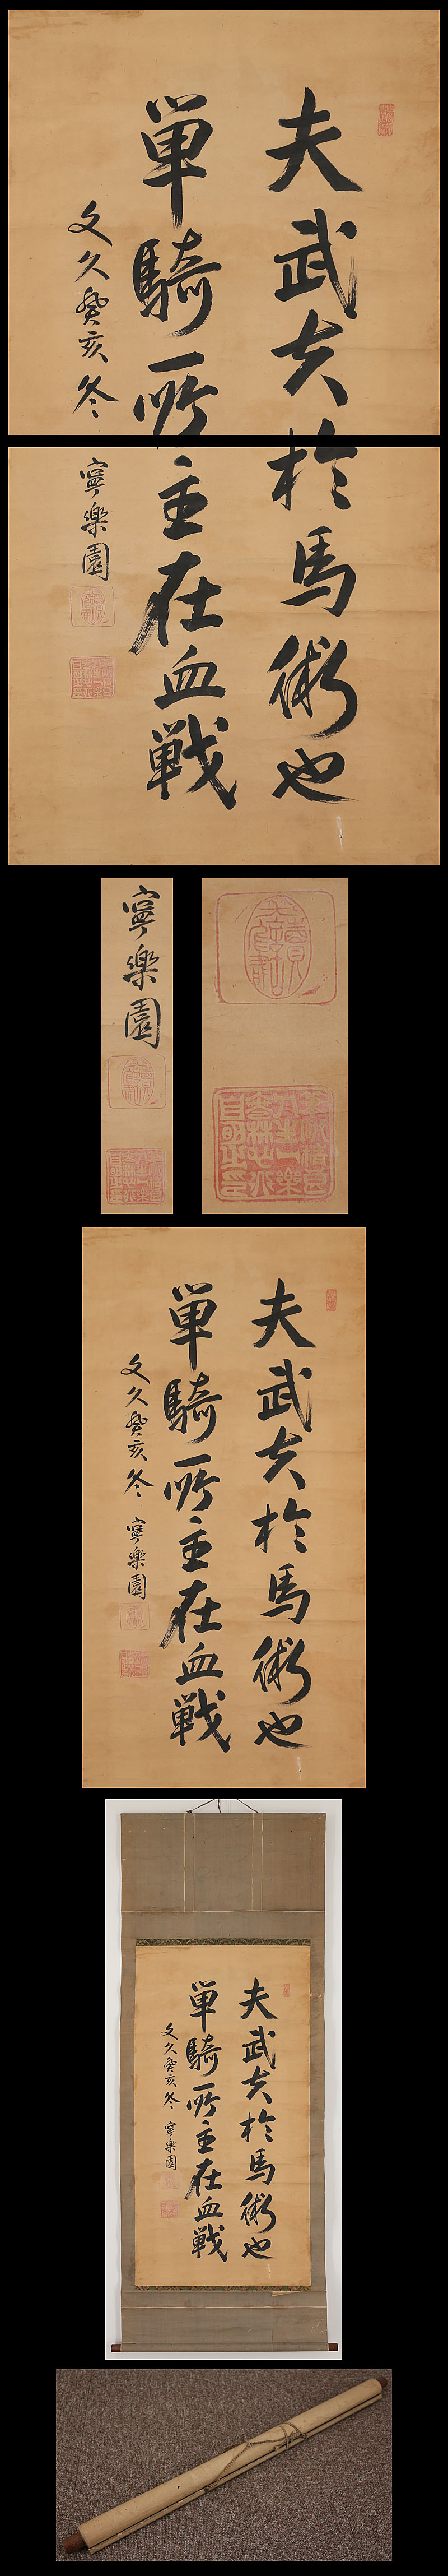 古川松根 二行書 | 古美術品・中国書画の買取・査定や掛軸の通販の